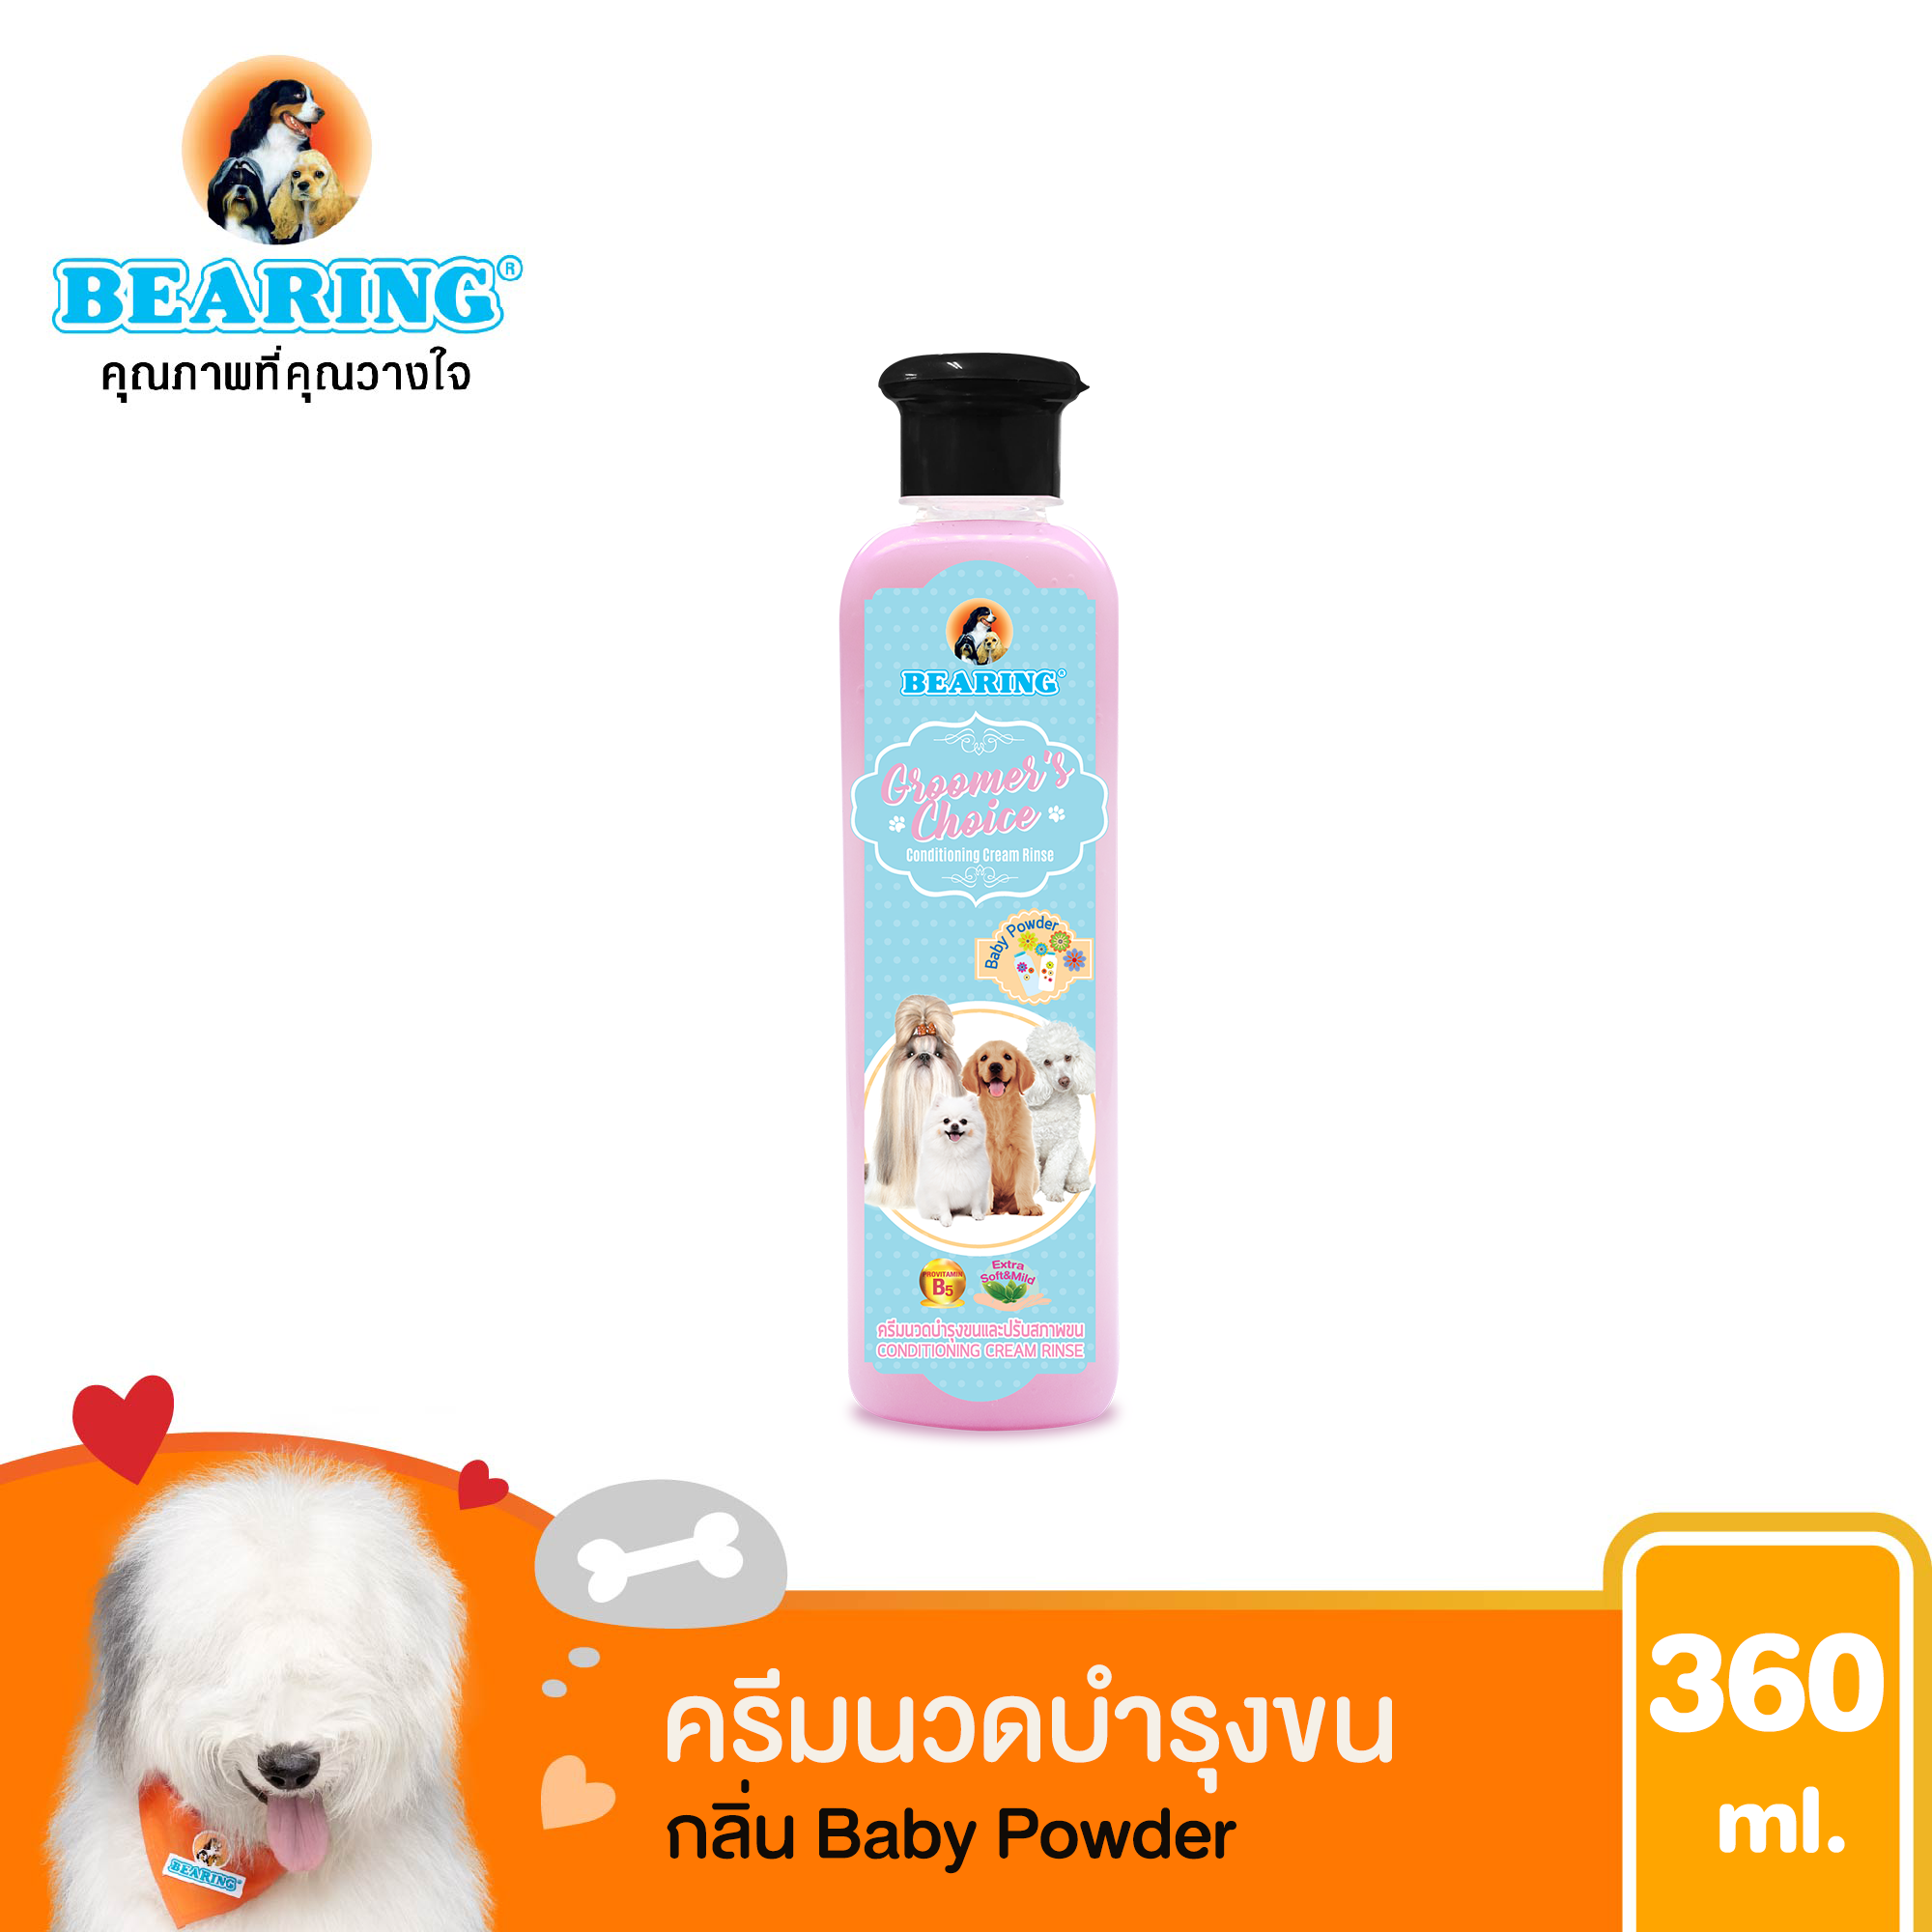 ครีมนวดขน ครีมนวดขนสุนัข หมา ครีมนวดบํารุงขน บำรุงขน แก้ขนพันกัน Bearing Groomer’s Choice Conditioner 360 ml. กลิ่น Baby powder (สีชมพู)